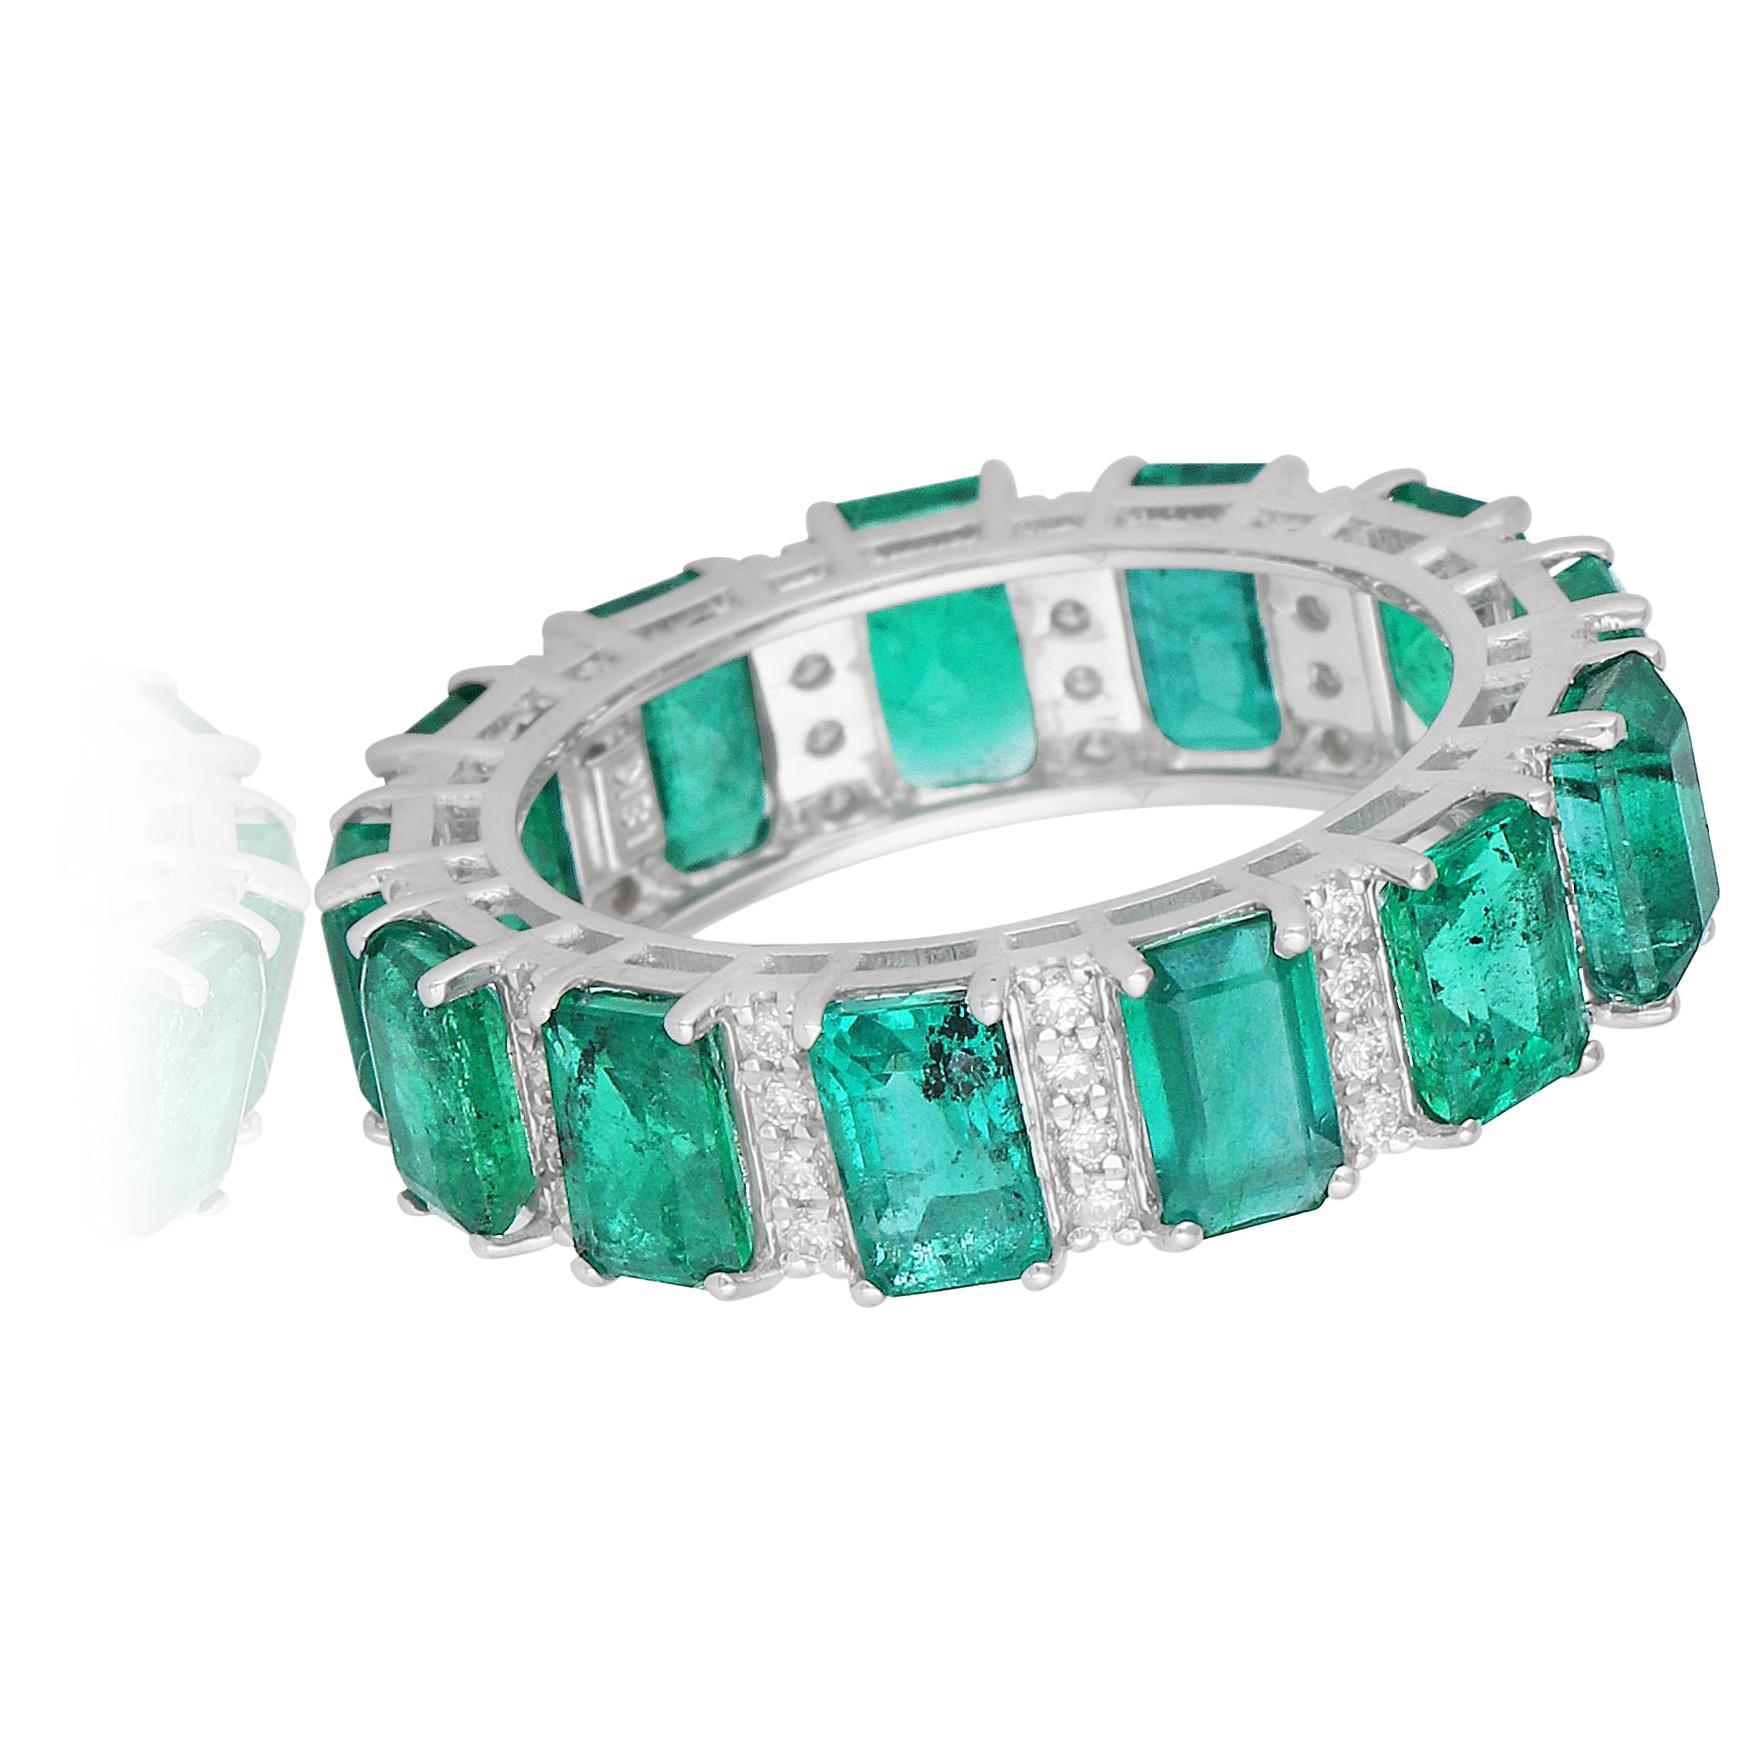 Schmücken Sie Ihren Finger mit der exquisiten Schönheit dieses Ringes aus einem sambischen Smaragd, der mit Diamantpavé verziert und in 18 Karat Weißgold gefasst ist. Dieser handgefertigte Ring ist ein atemberaubendes Beispiel für edlen Schmuck, der